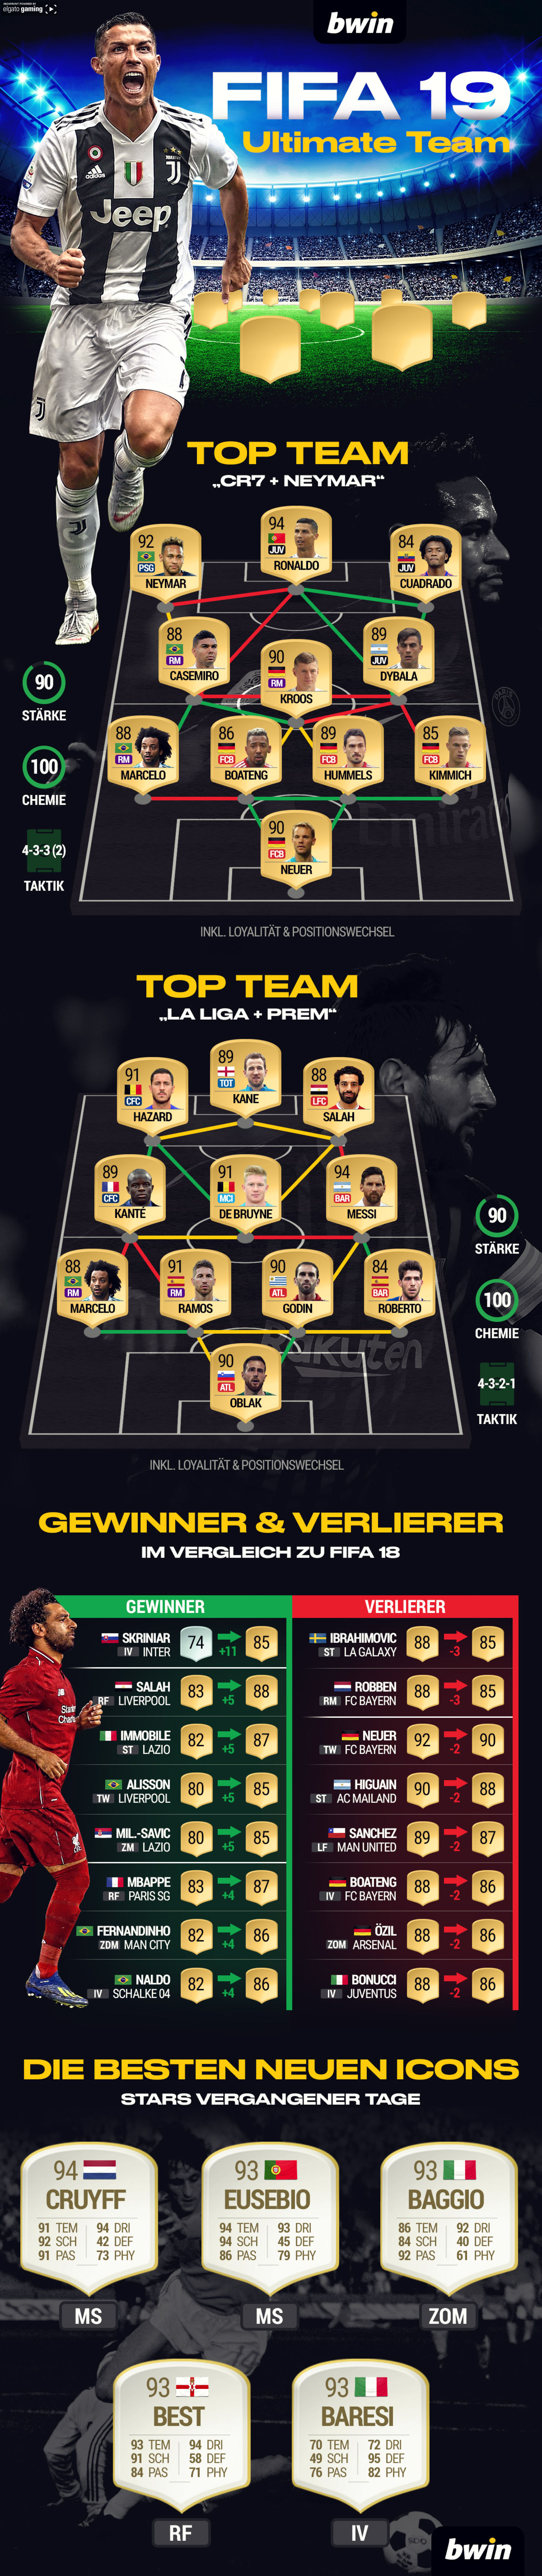 FIFA 19 : FIFA 19 Ultimate Team: Top-Teams, Gewinner & Verlierer und die besten neuen Icons